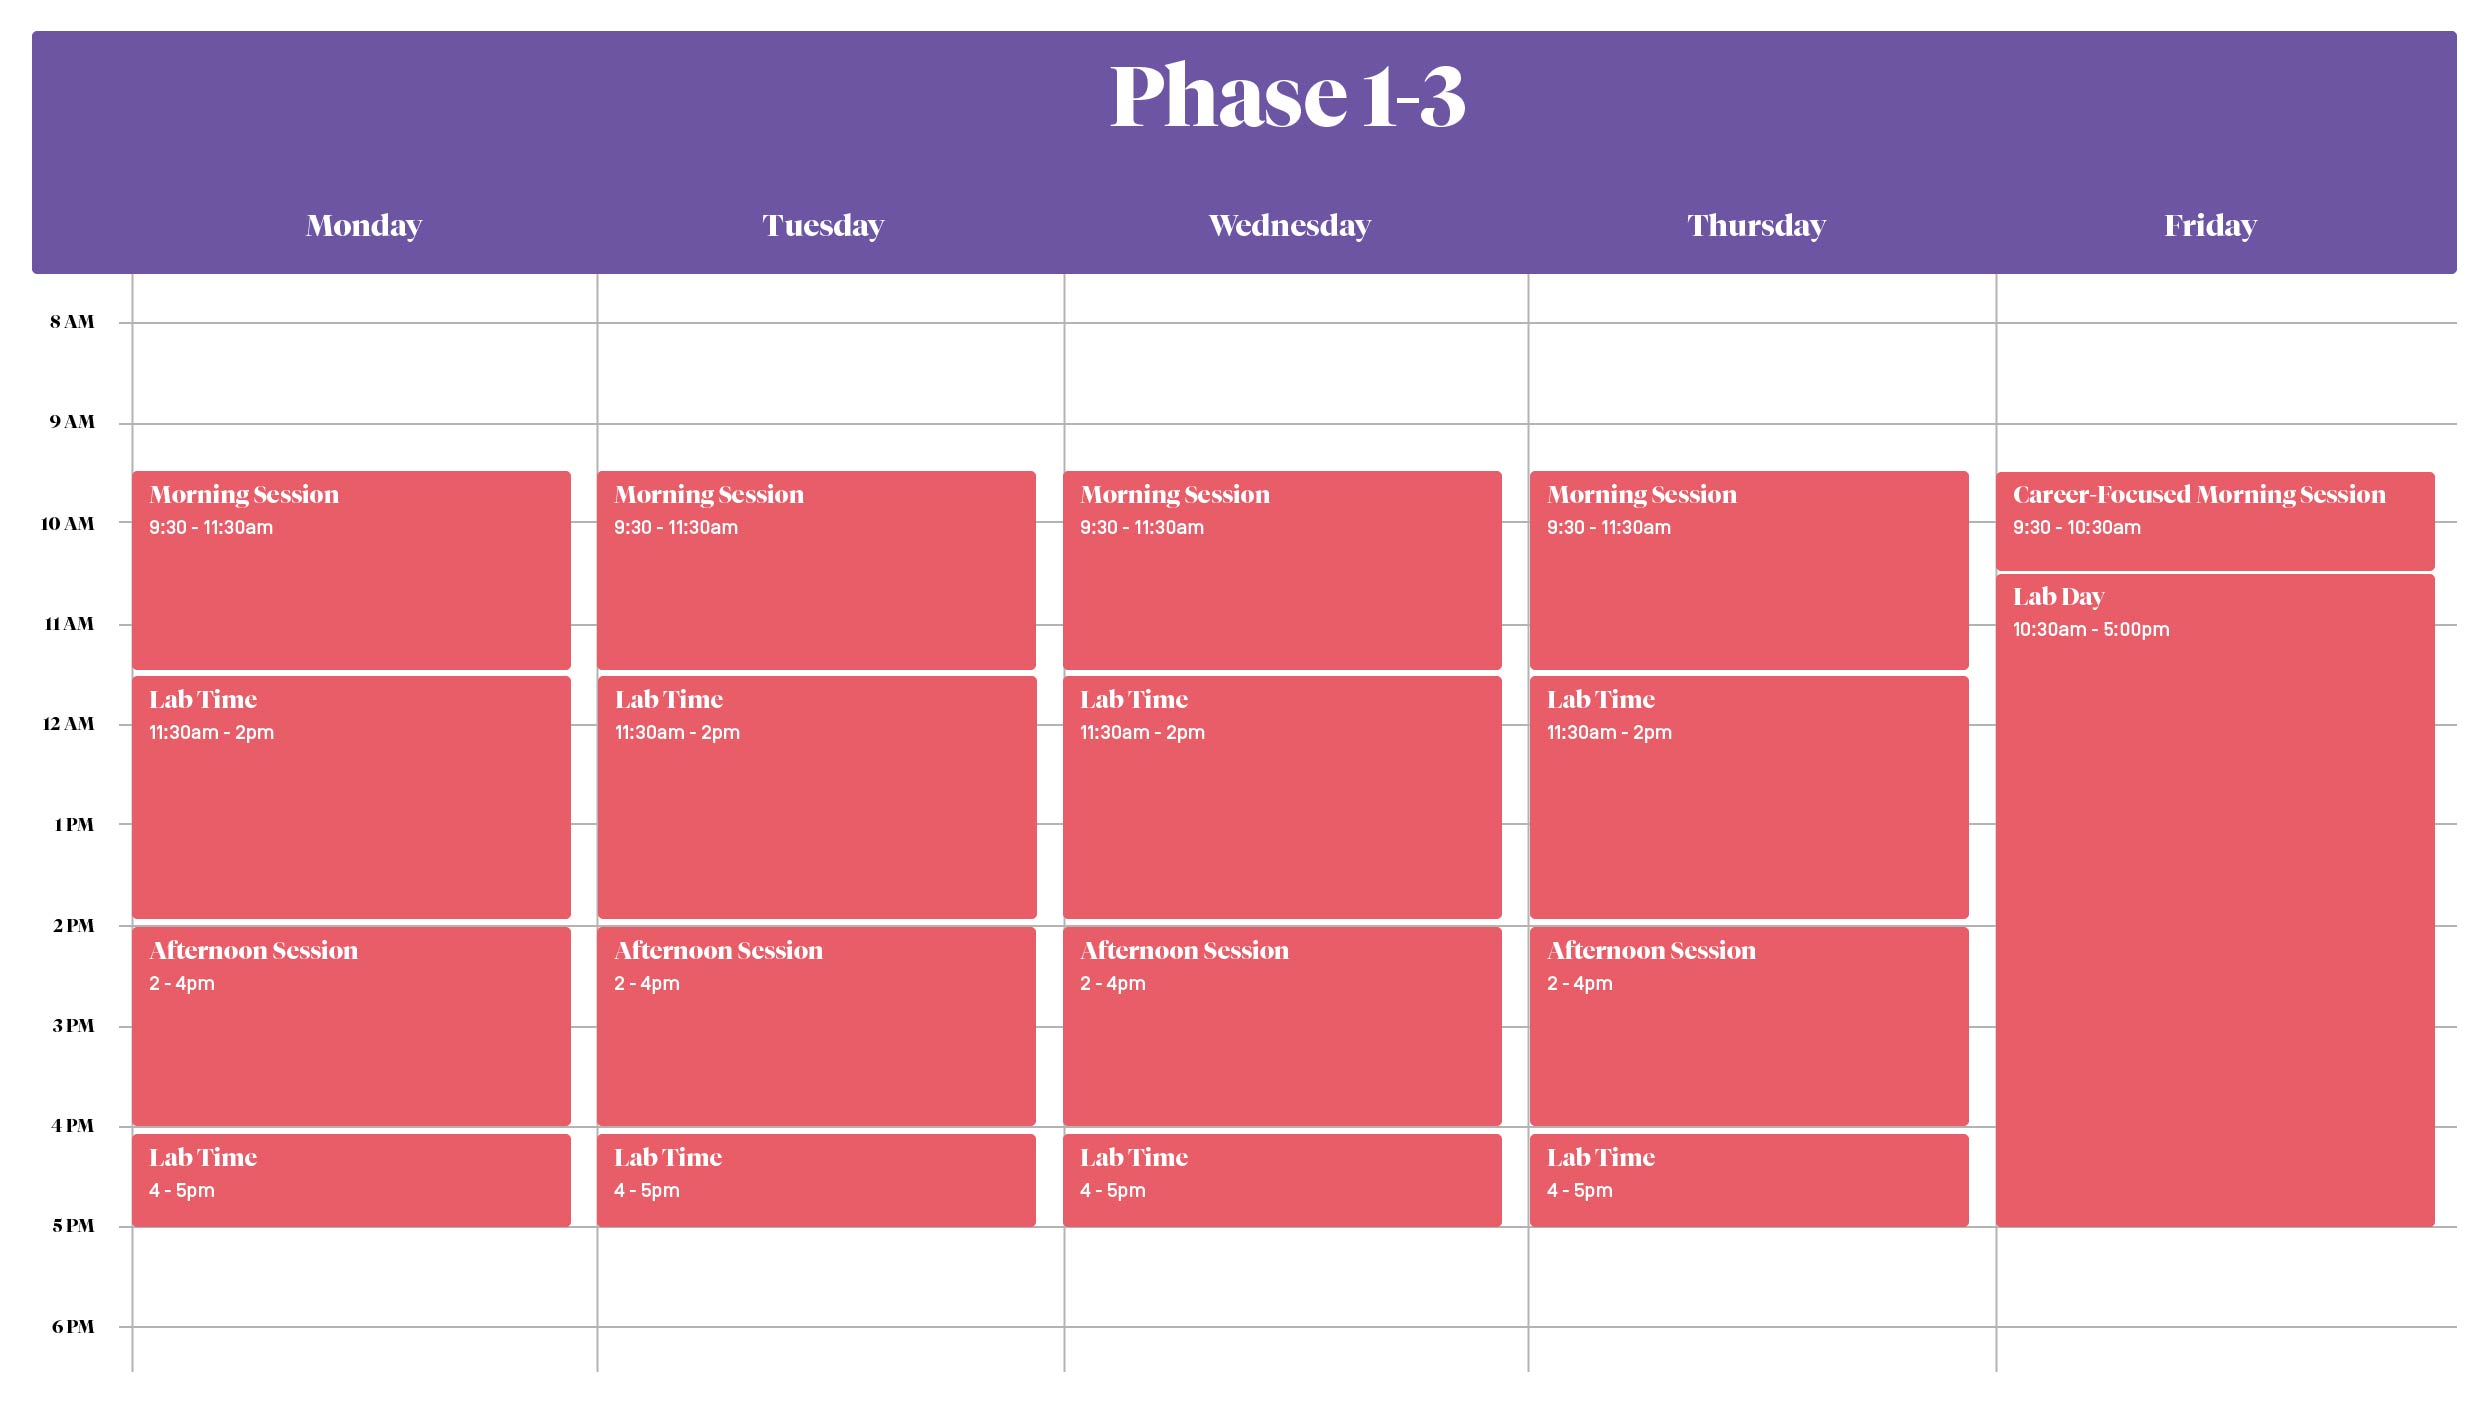 Phase 1-3 Schedule